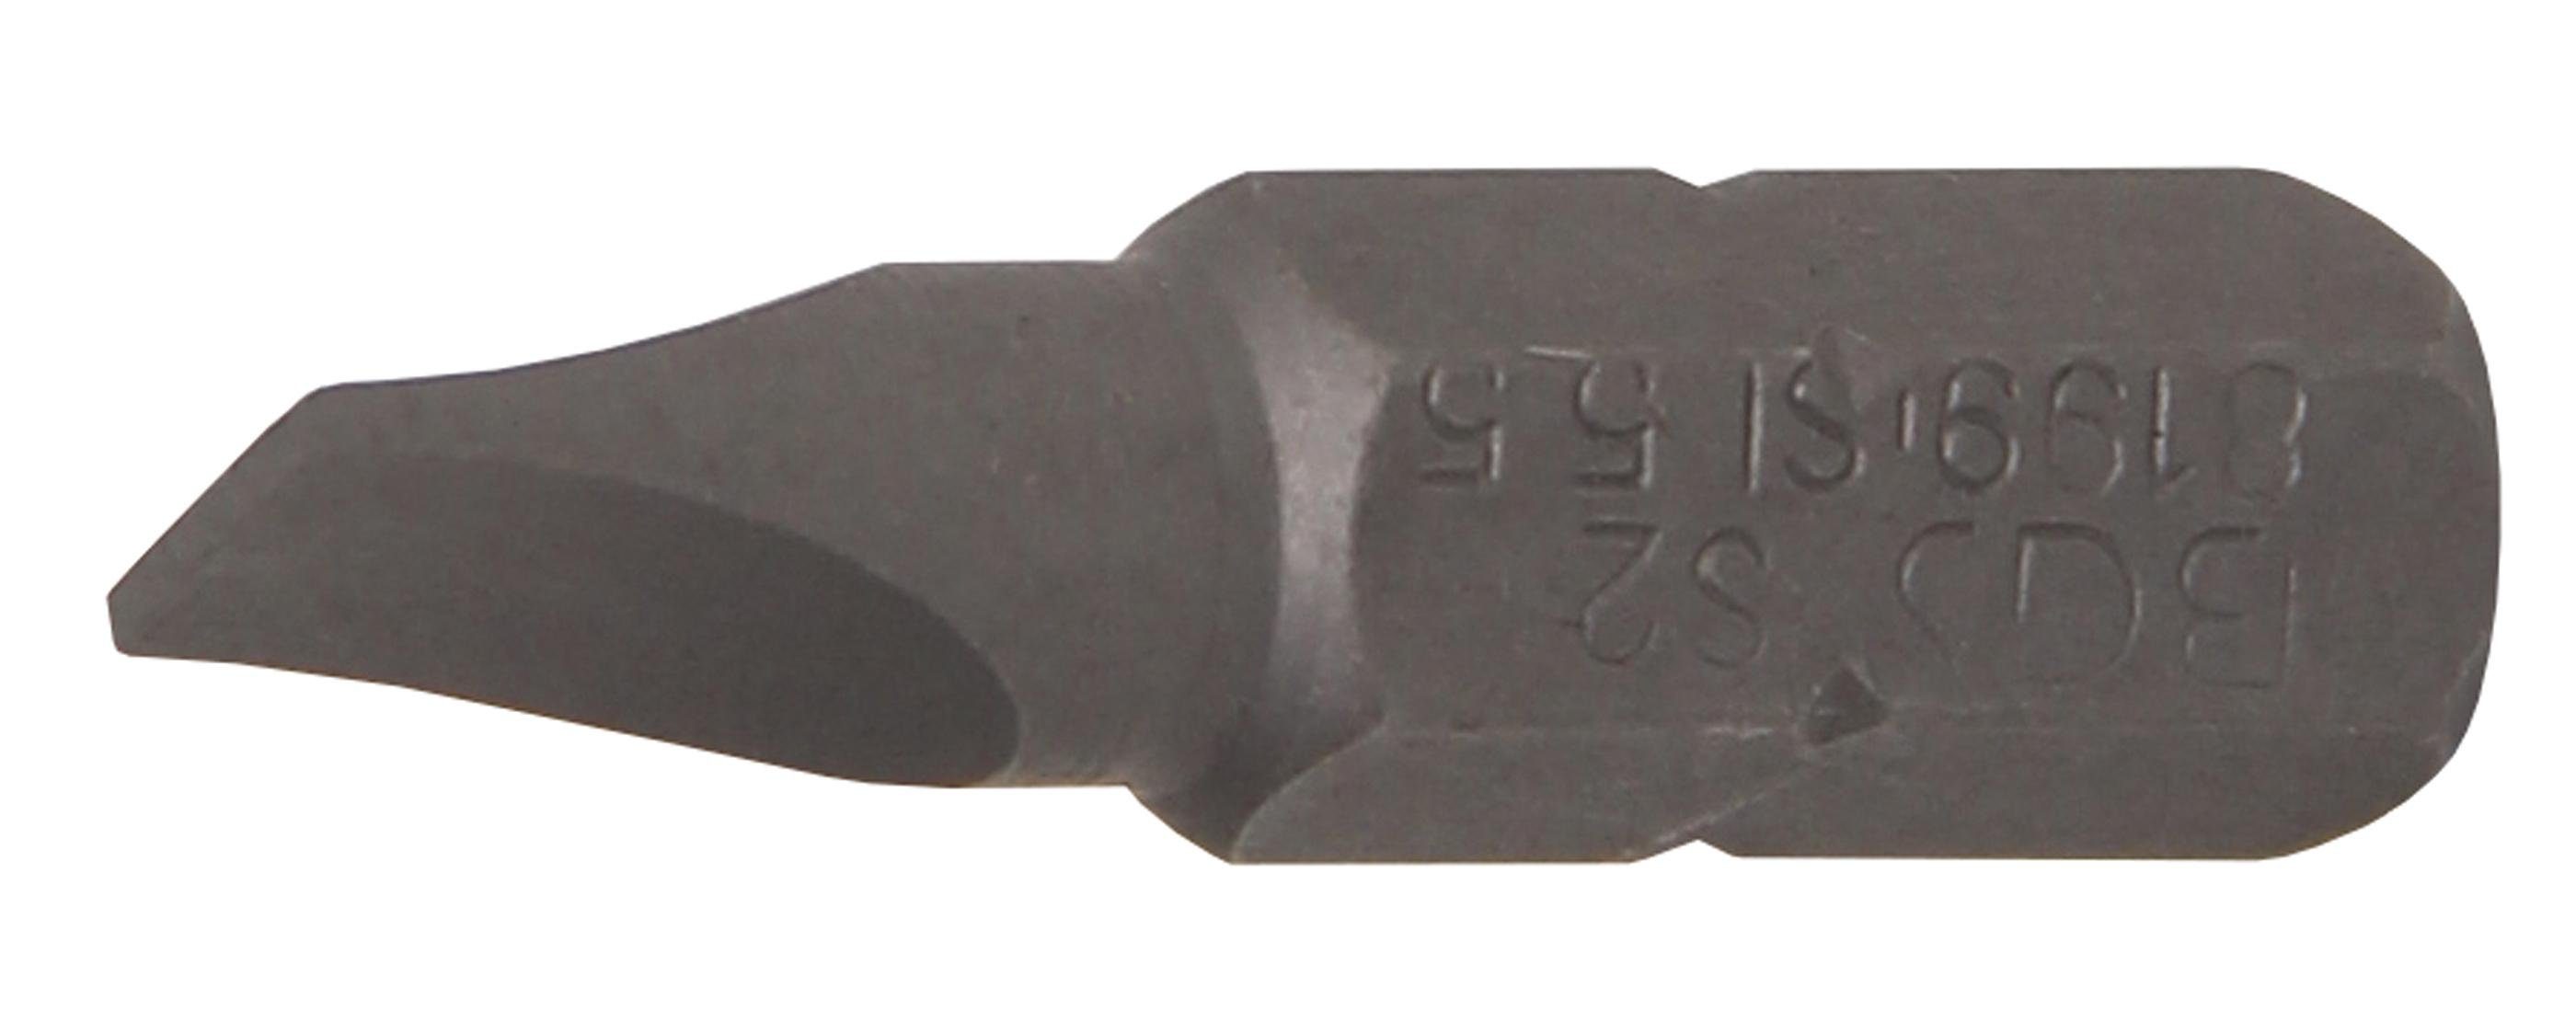 BGS technic mm Bit, 6,3 (1/4), Bit-Schraubendreher Außensechskant 5,5 mm Antrieb Schlitz